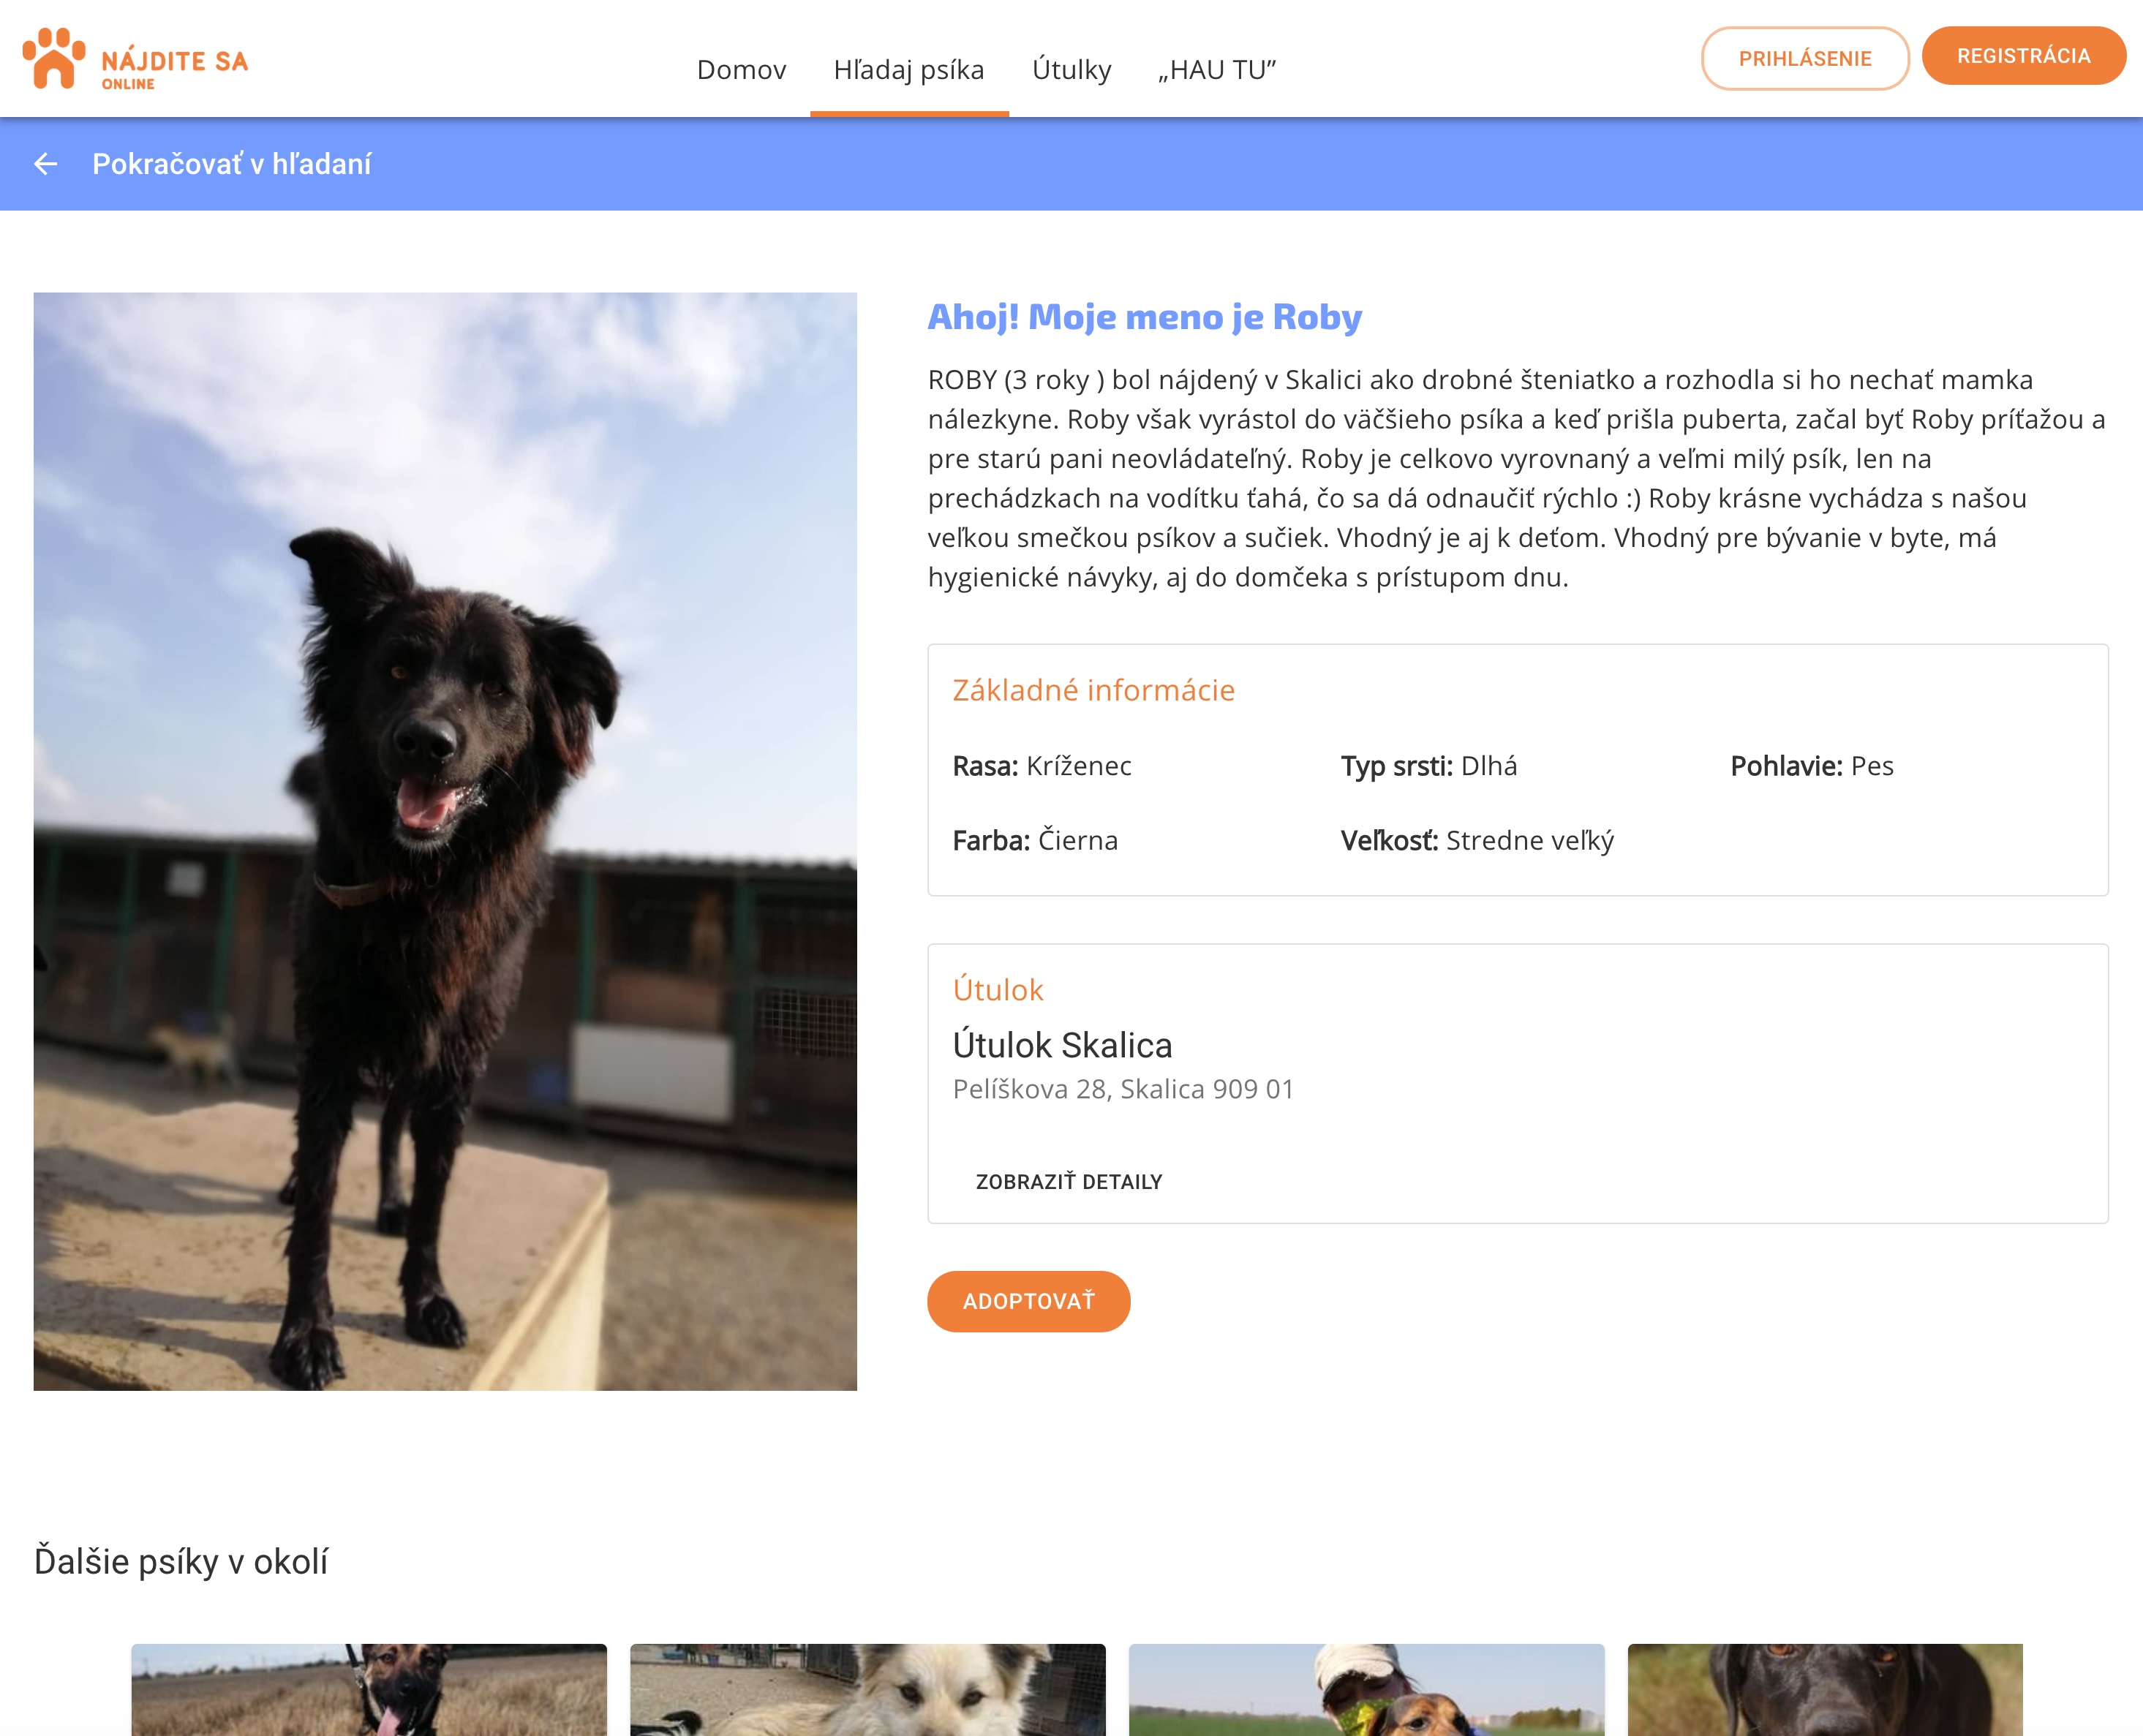 Náhľad detailov o psíkovy na portáli najditesa.online